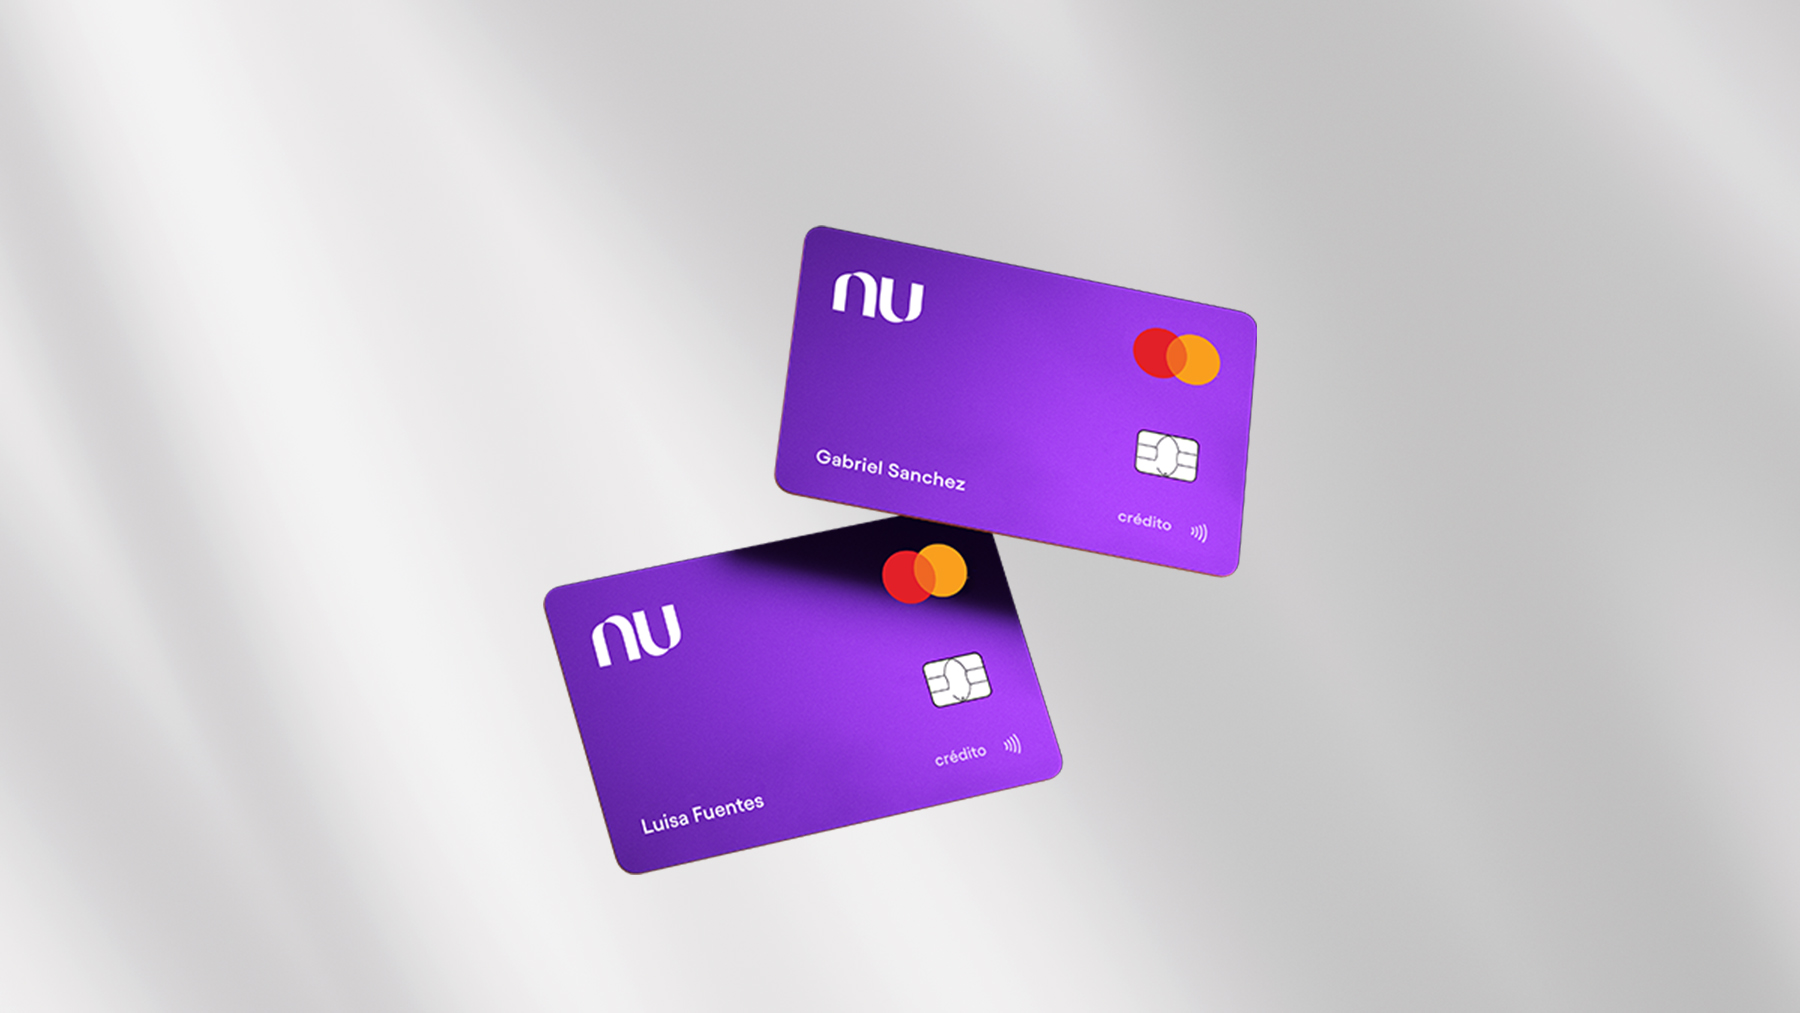 Dos tarjetas de crédito de color morado están suspendidas en el aire frente a un fondo color gris para recordar cómo funciona la tarjeta garantizada nu